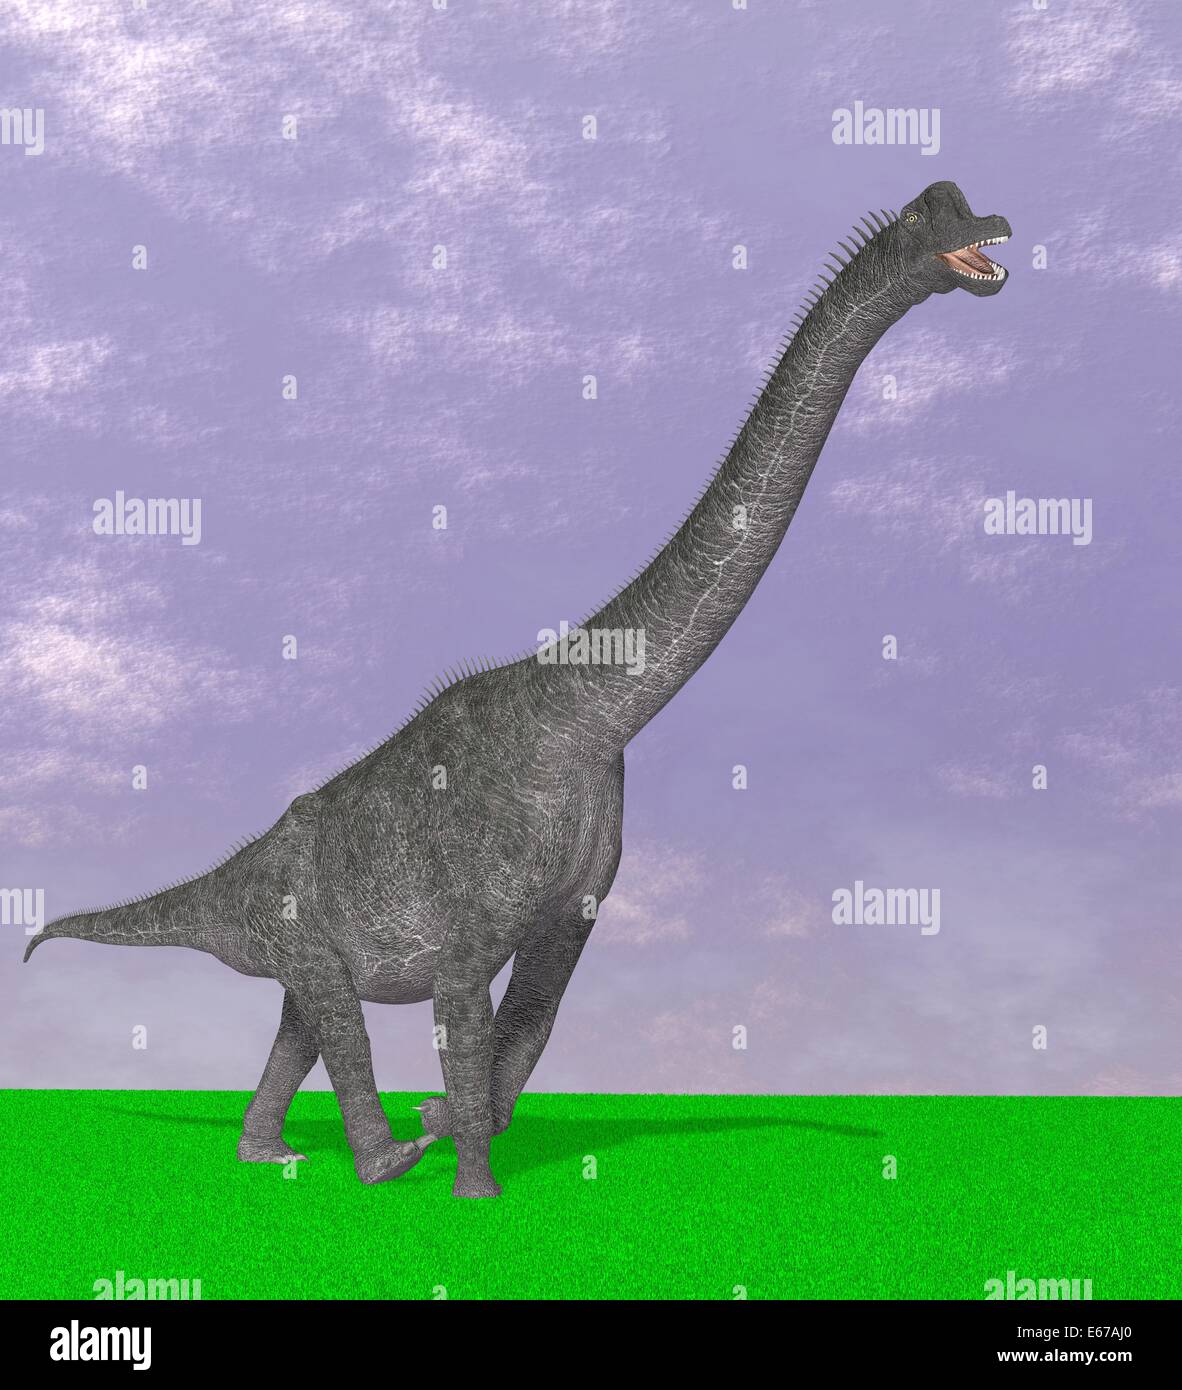 Dinosaurier Brachiosaurus / dinosaur Brachiosaurus Stock Photo